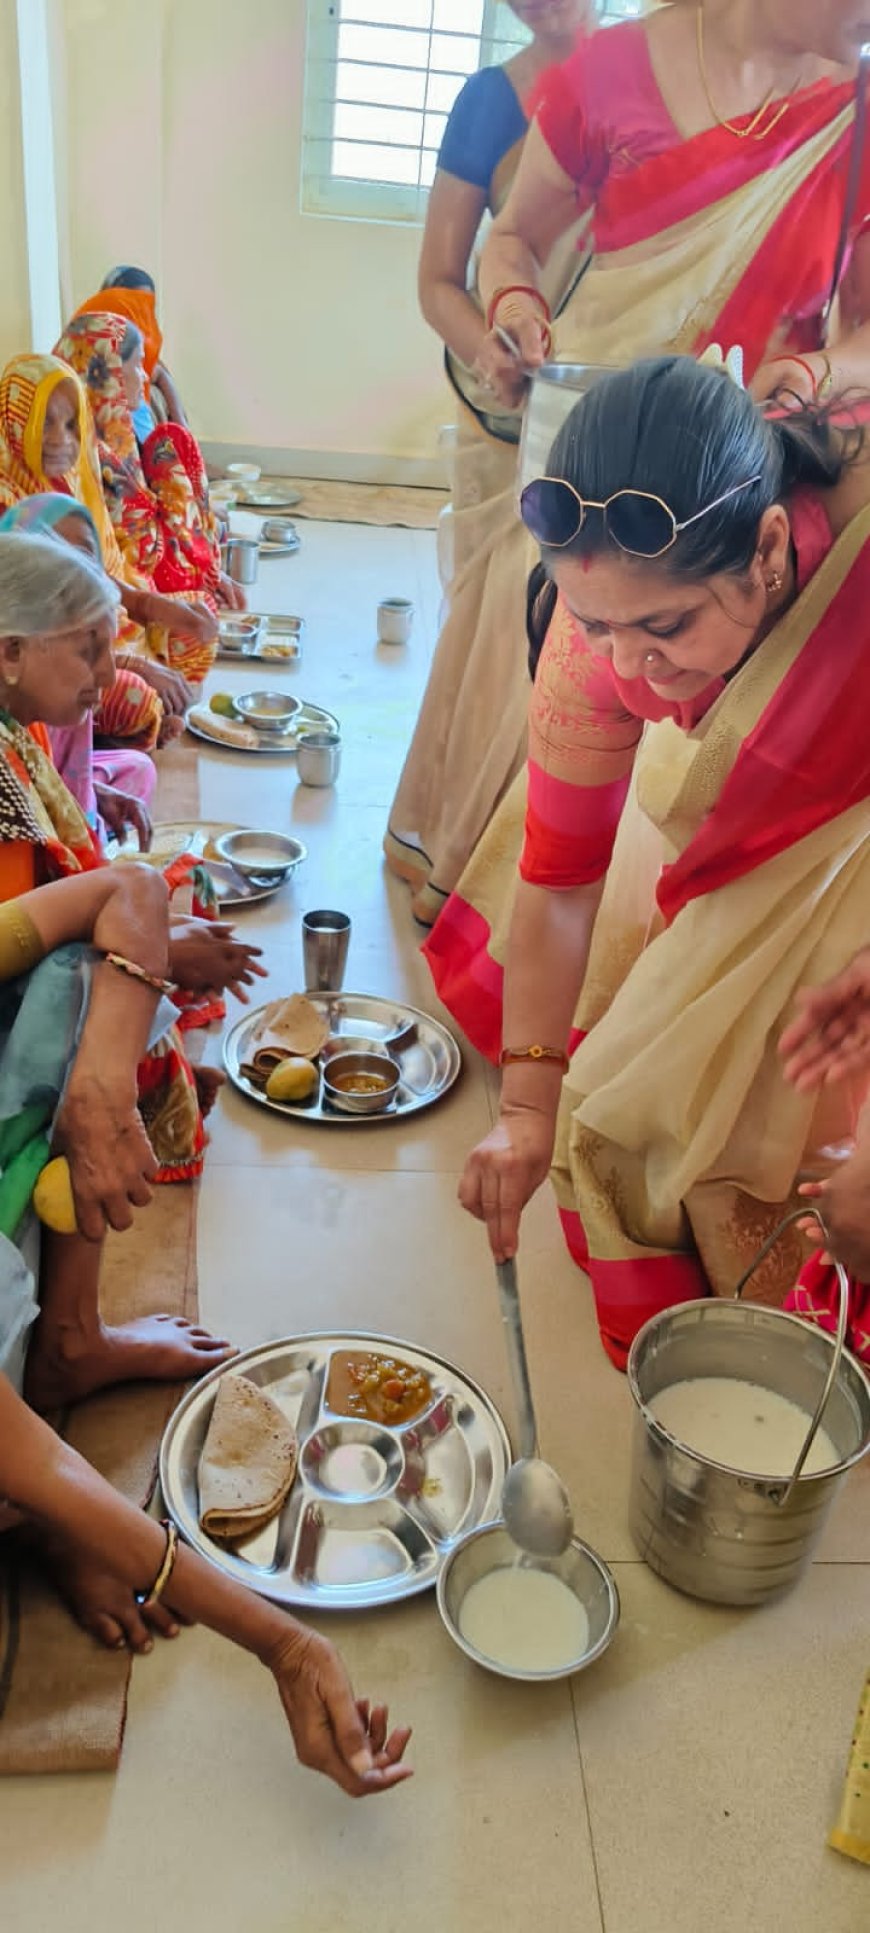 जीव दया सप्ताह: दिगंबर जैन महा समिति महिला संभाग ने पांचवें दिन निशक्त और वृद्ध जनों के बीच जाकर बिताया समय और वृद्धाश्रम में कराया भोजन